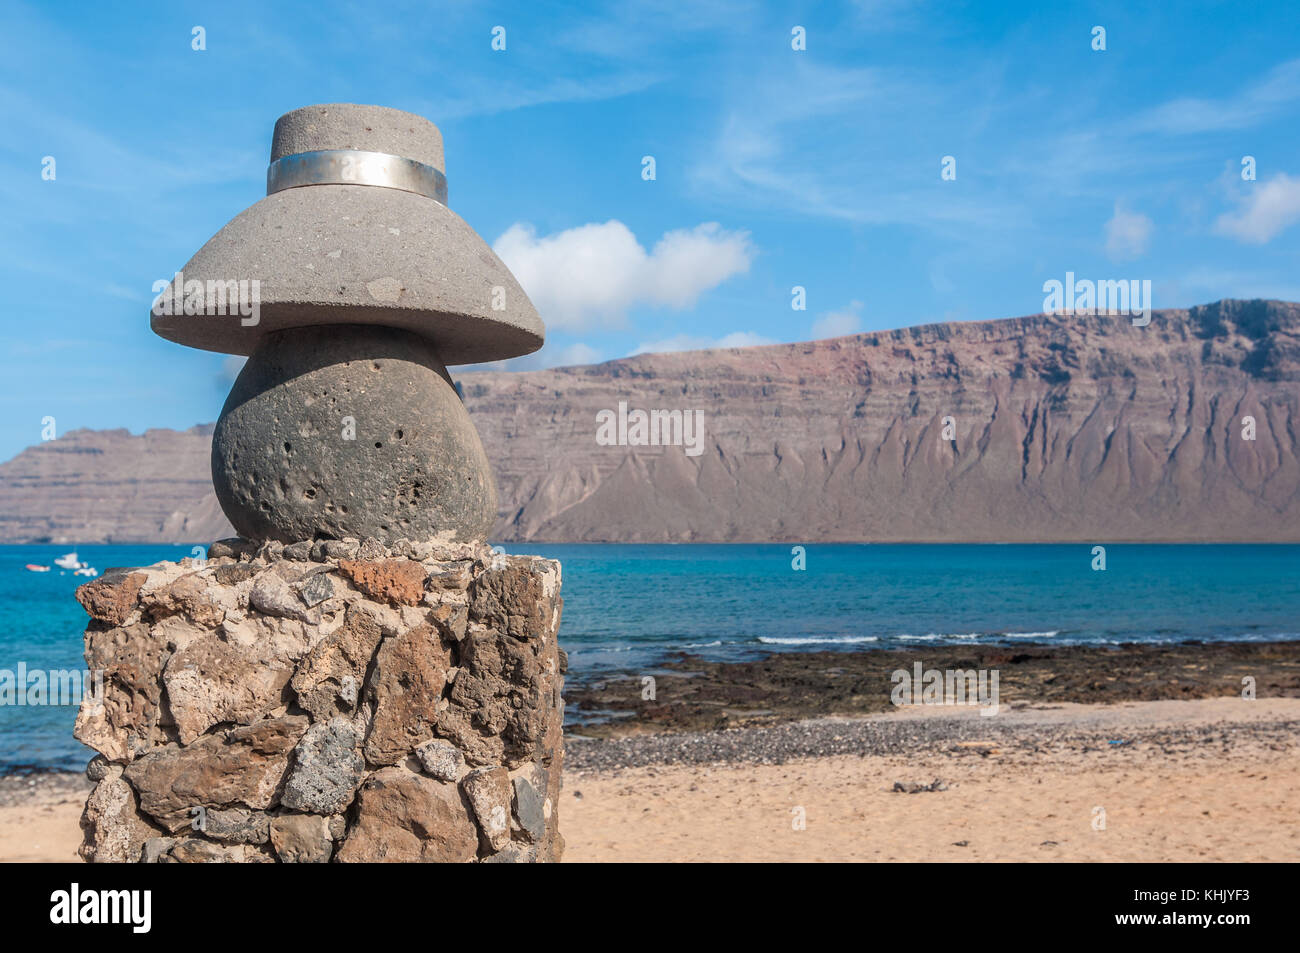 Vista de una calle típica con una estatua de piedra de un típico sombrero  en primer plano y la playa, en el fondo, La Graciosa, Islas Canarias,  España Fotografía de stock -